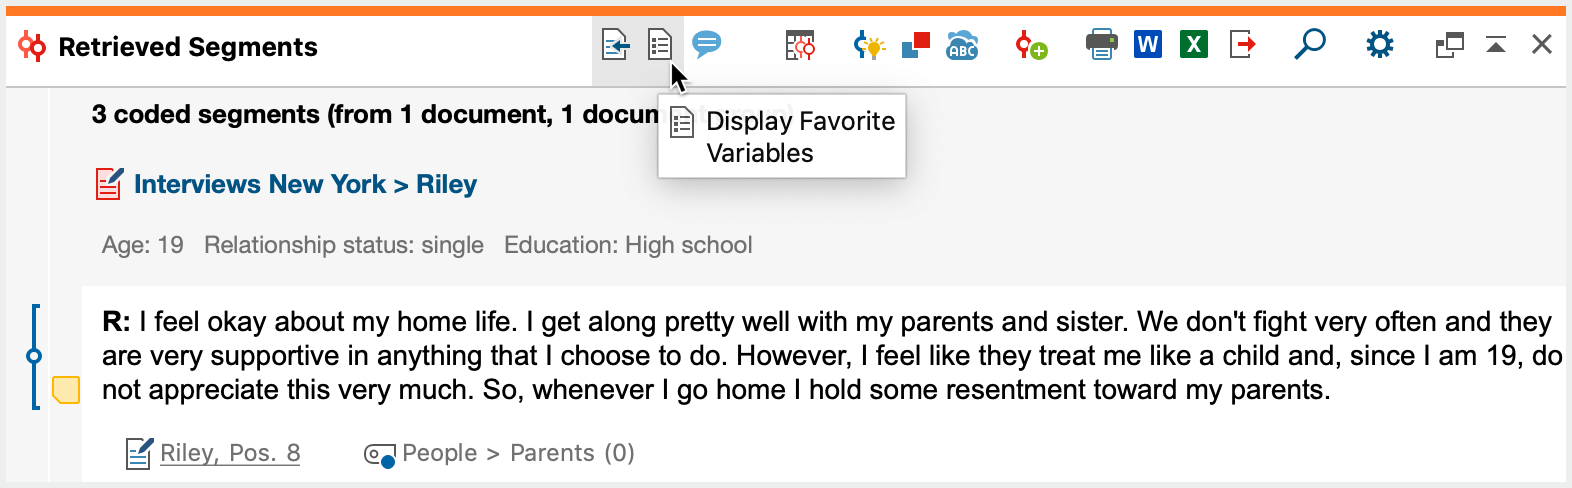 Display favorite variable in the “Retrieved Segments” window